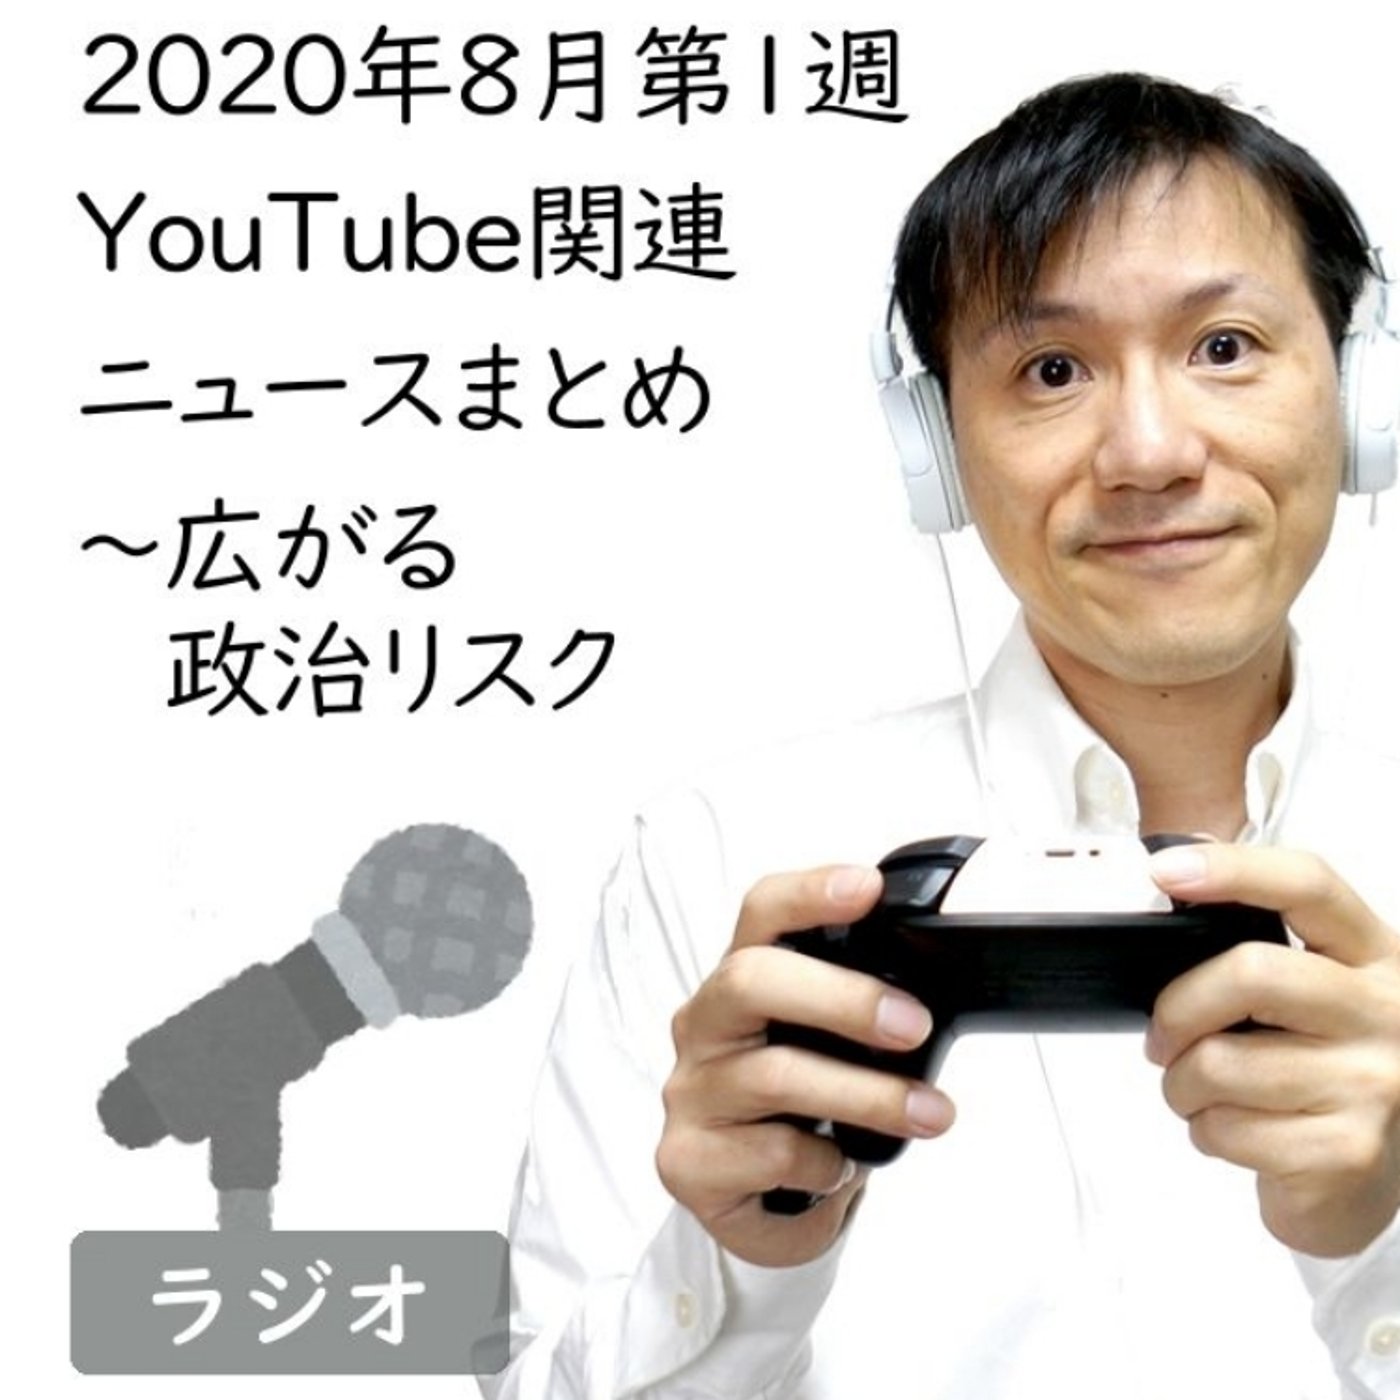 【#167】2020年8月第1週YouTube関連ニュースまとめ～チャイナリスク